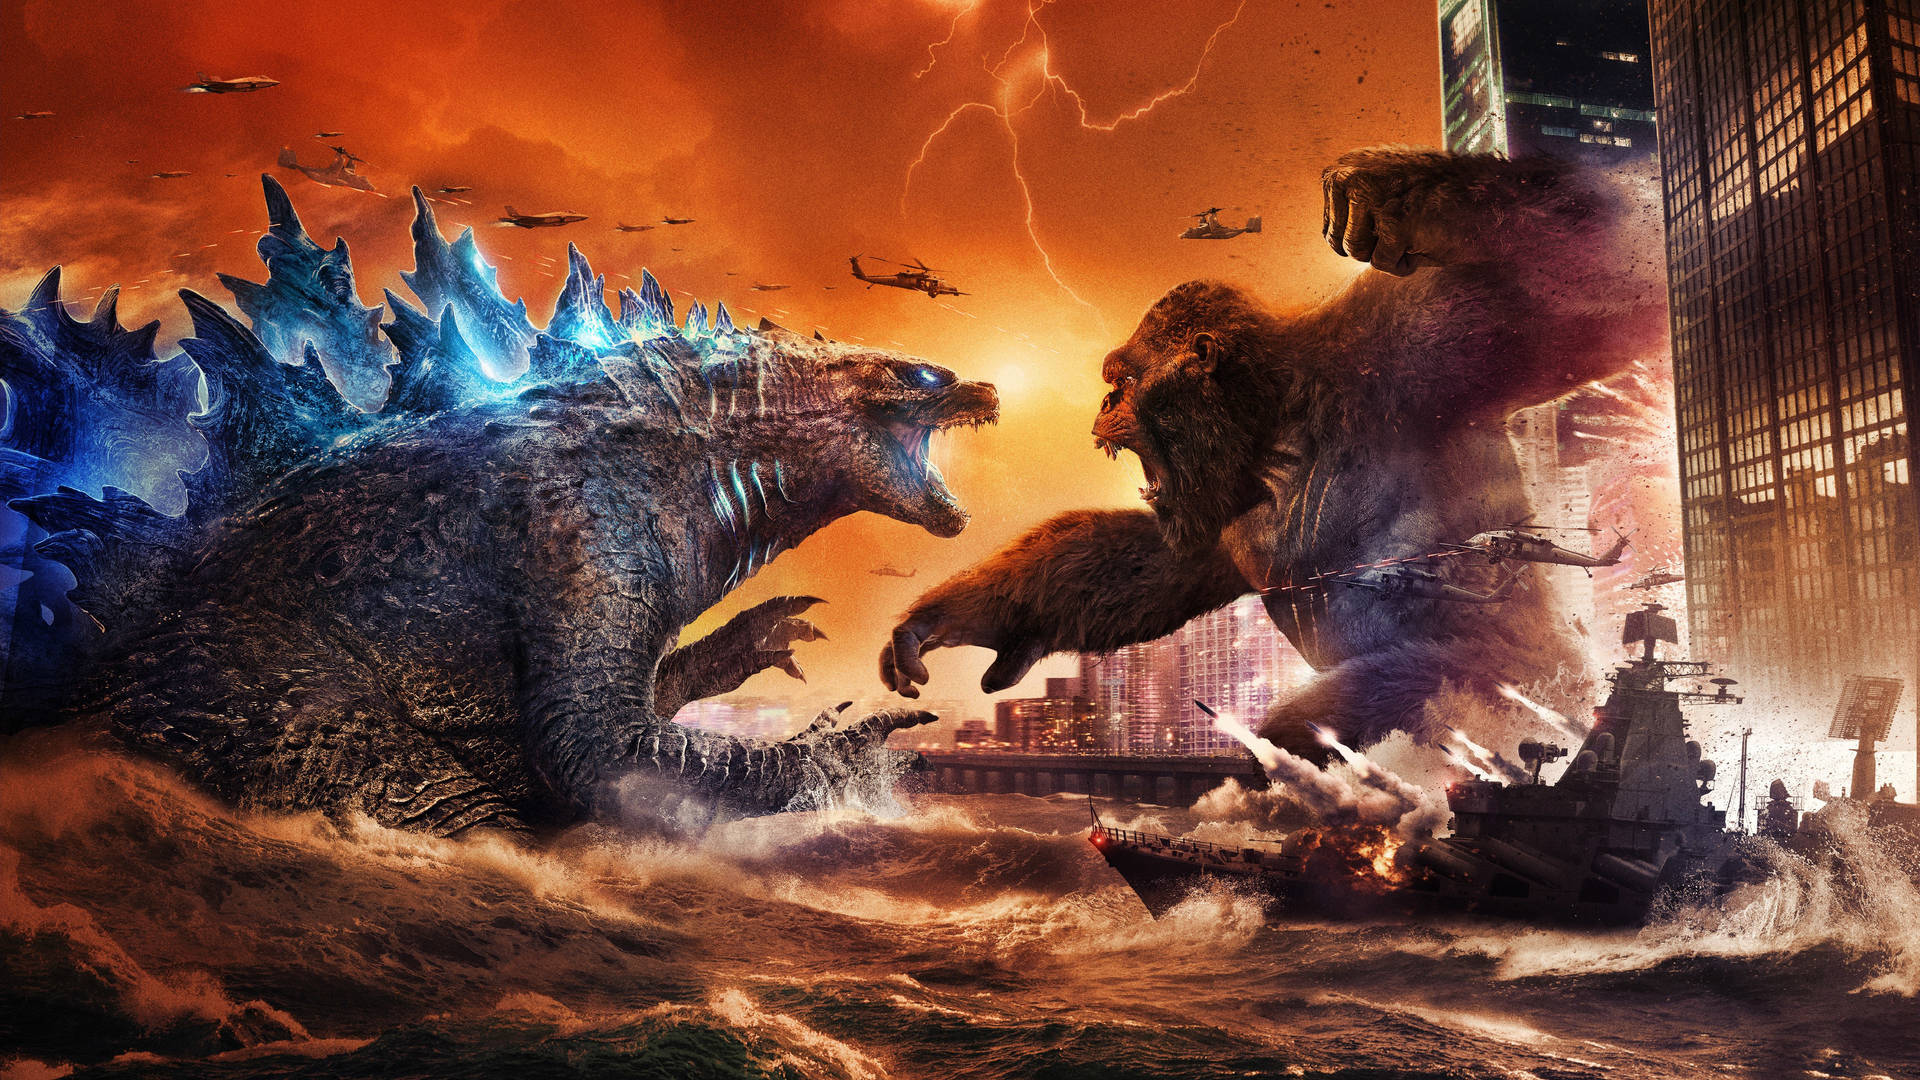 Godzilla Vs Kong Wallpaper Images